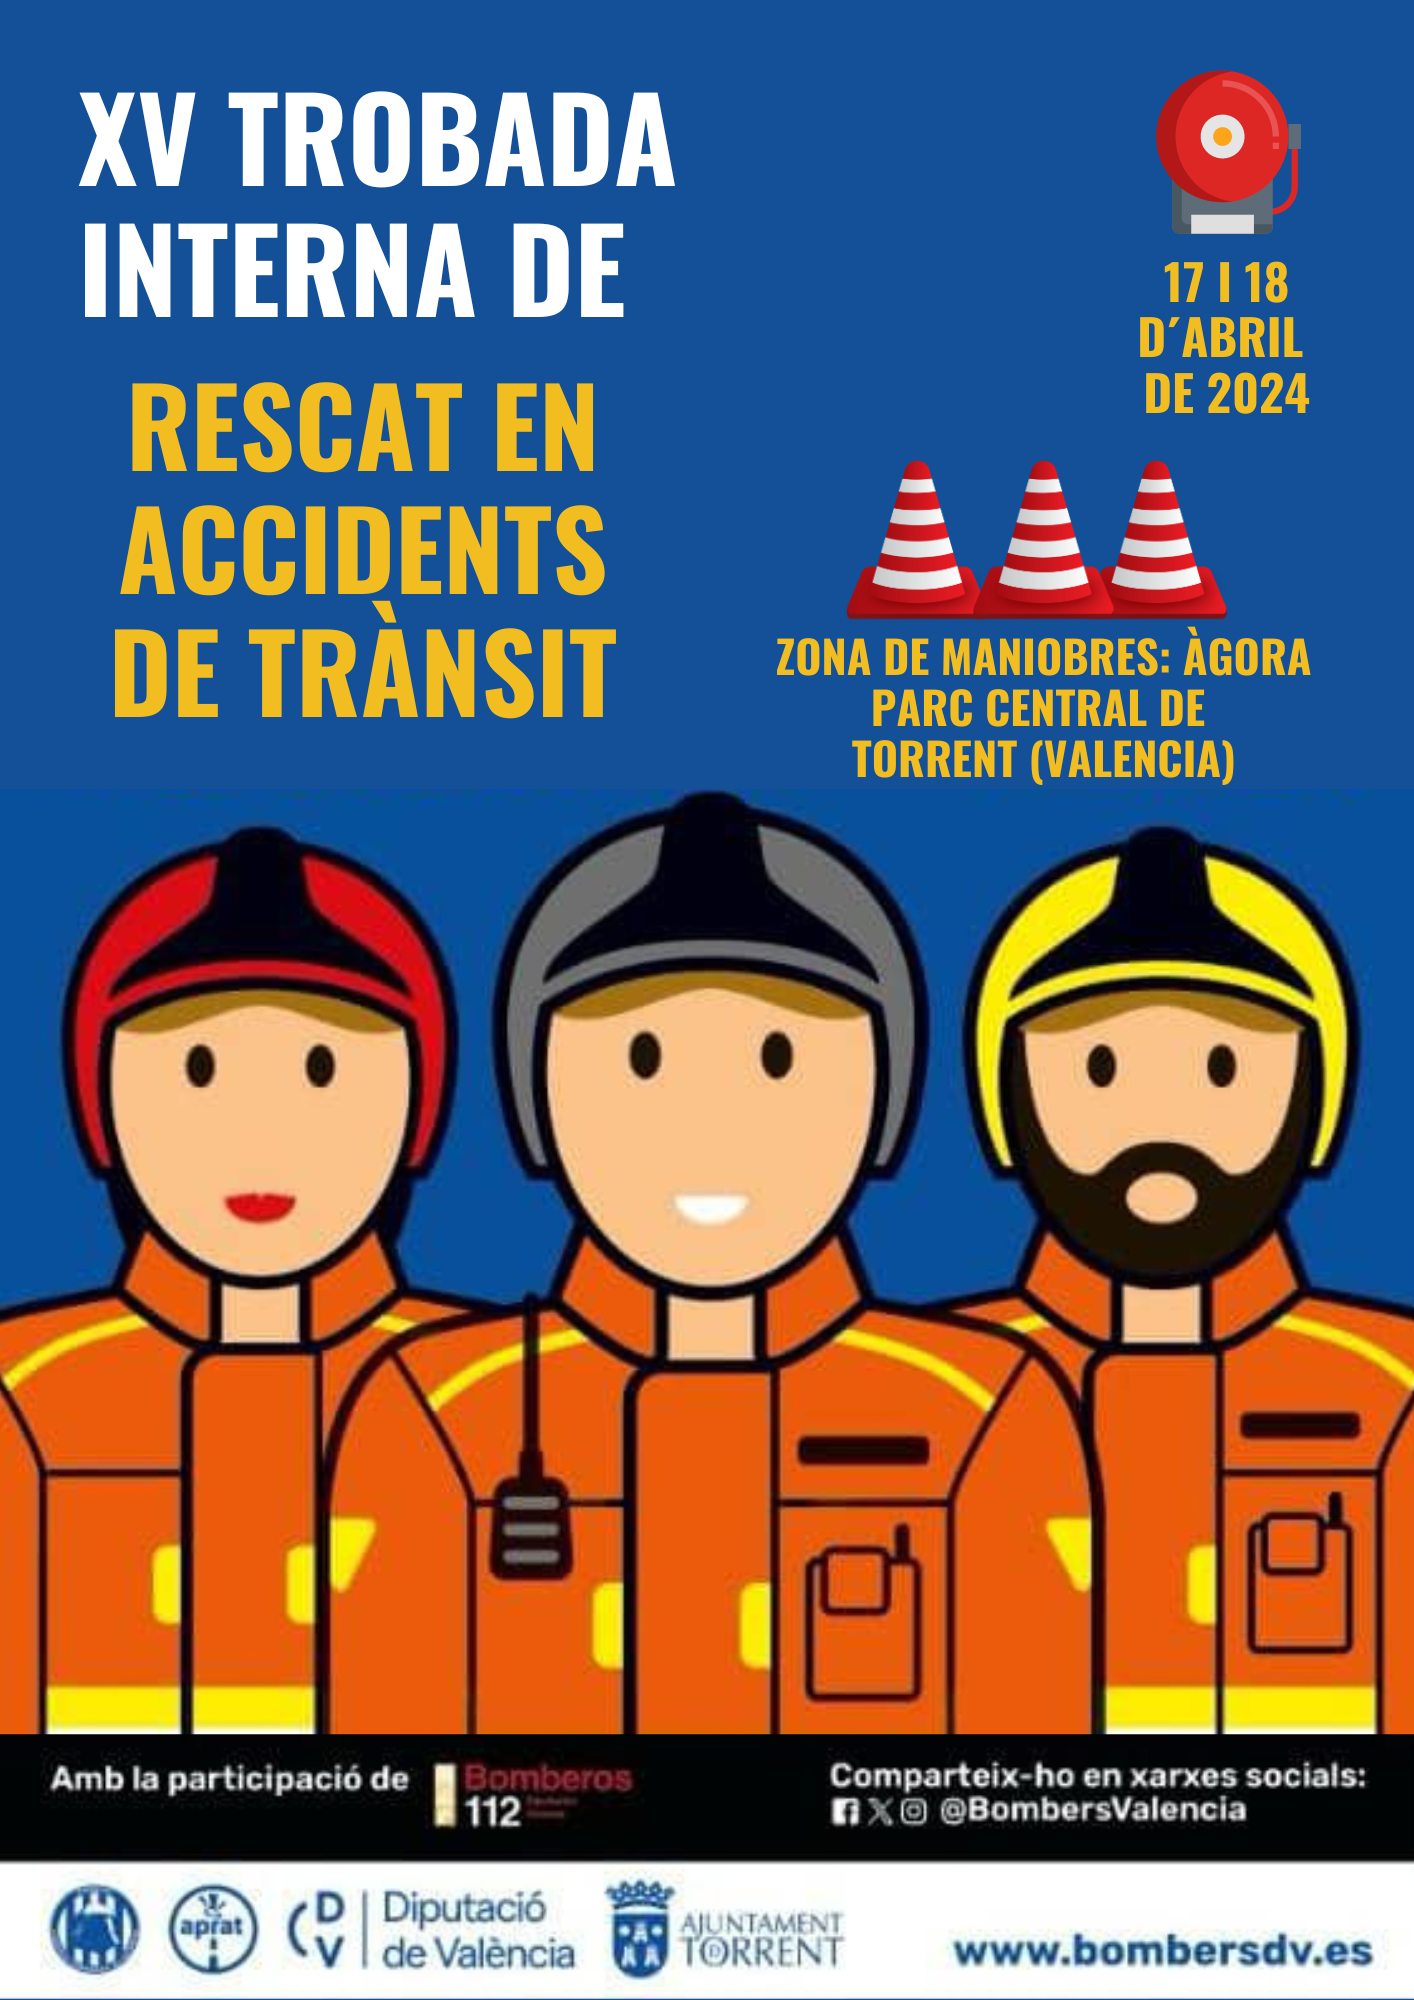 Llega la XV edición del Encuentro interno de Rescate en Accidentes de Tráfico a Torrent